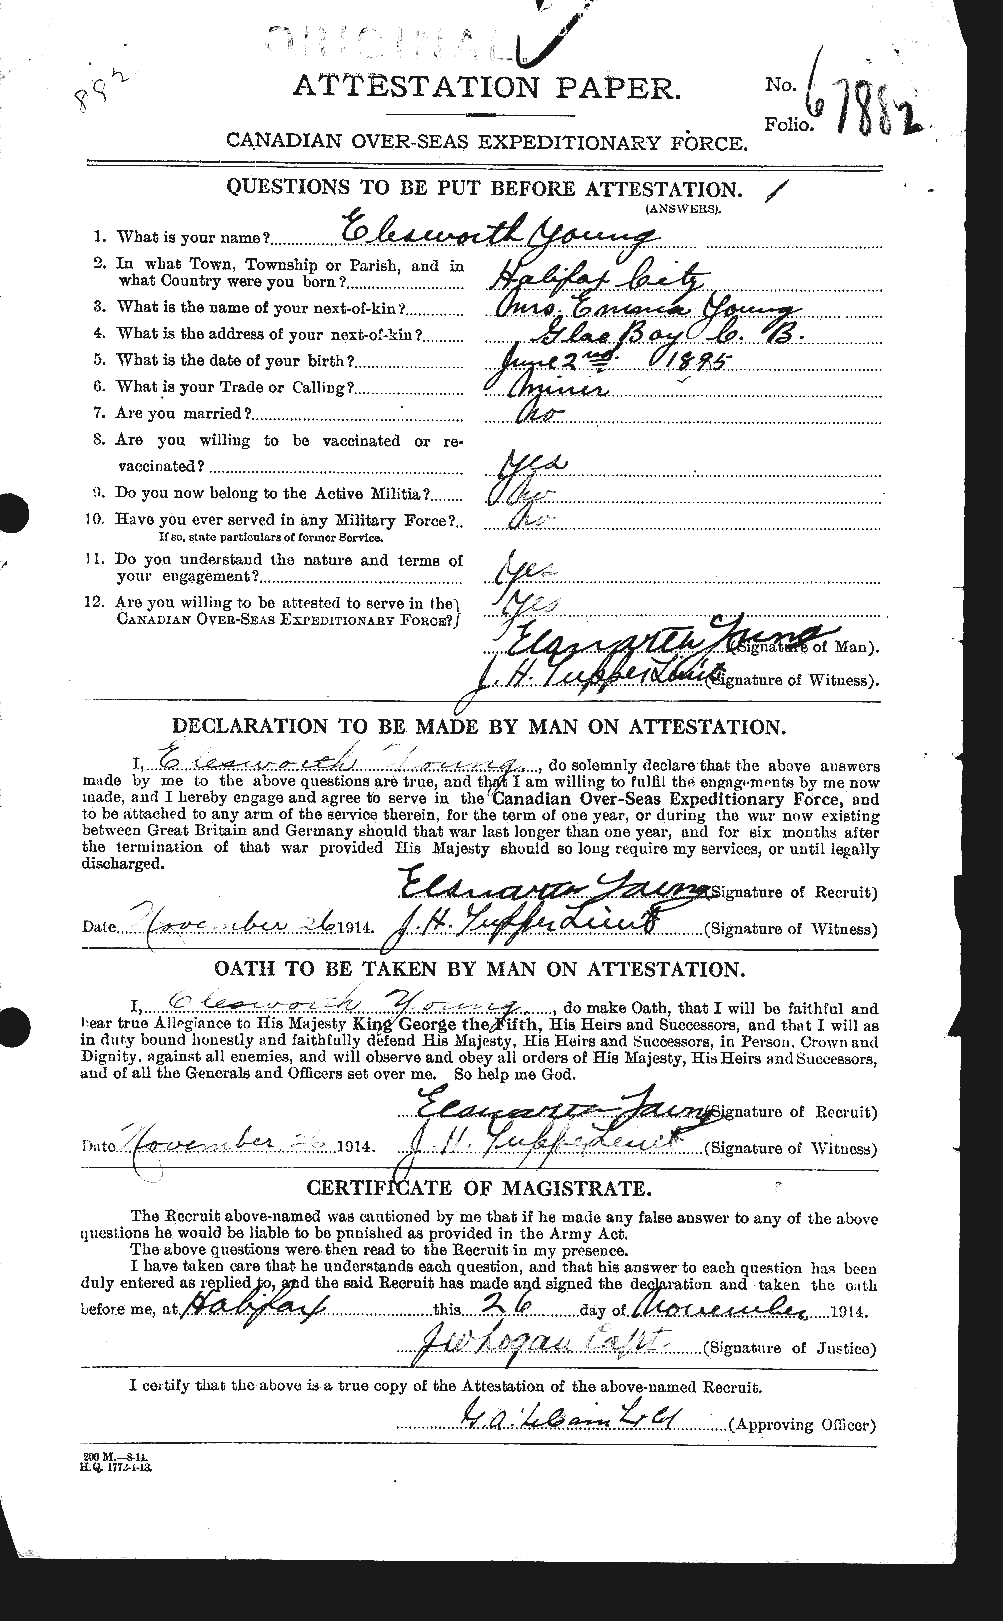 Dossiers du Personnel de la Première Guerre mondiale - CEC 690264a